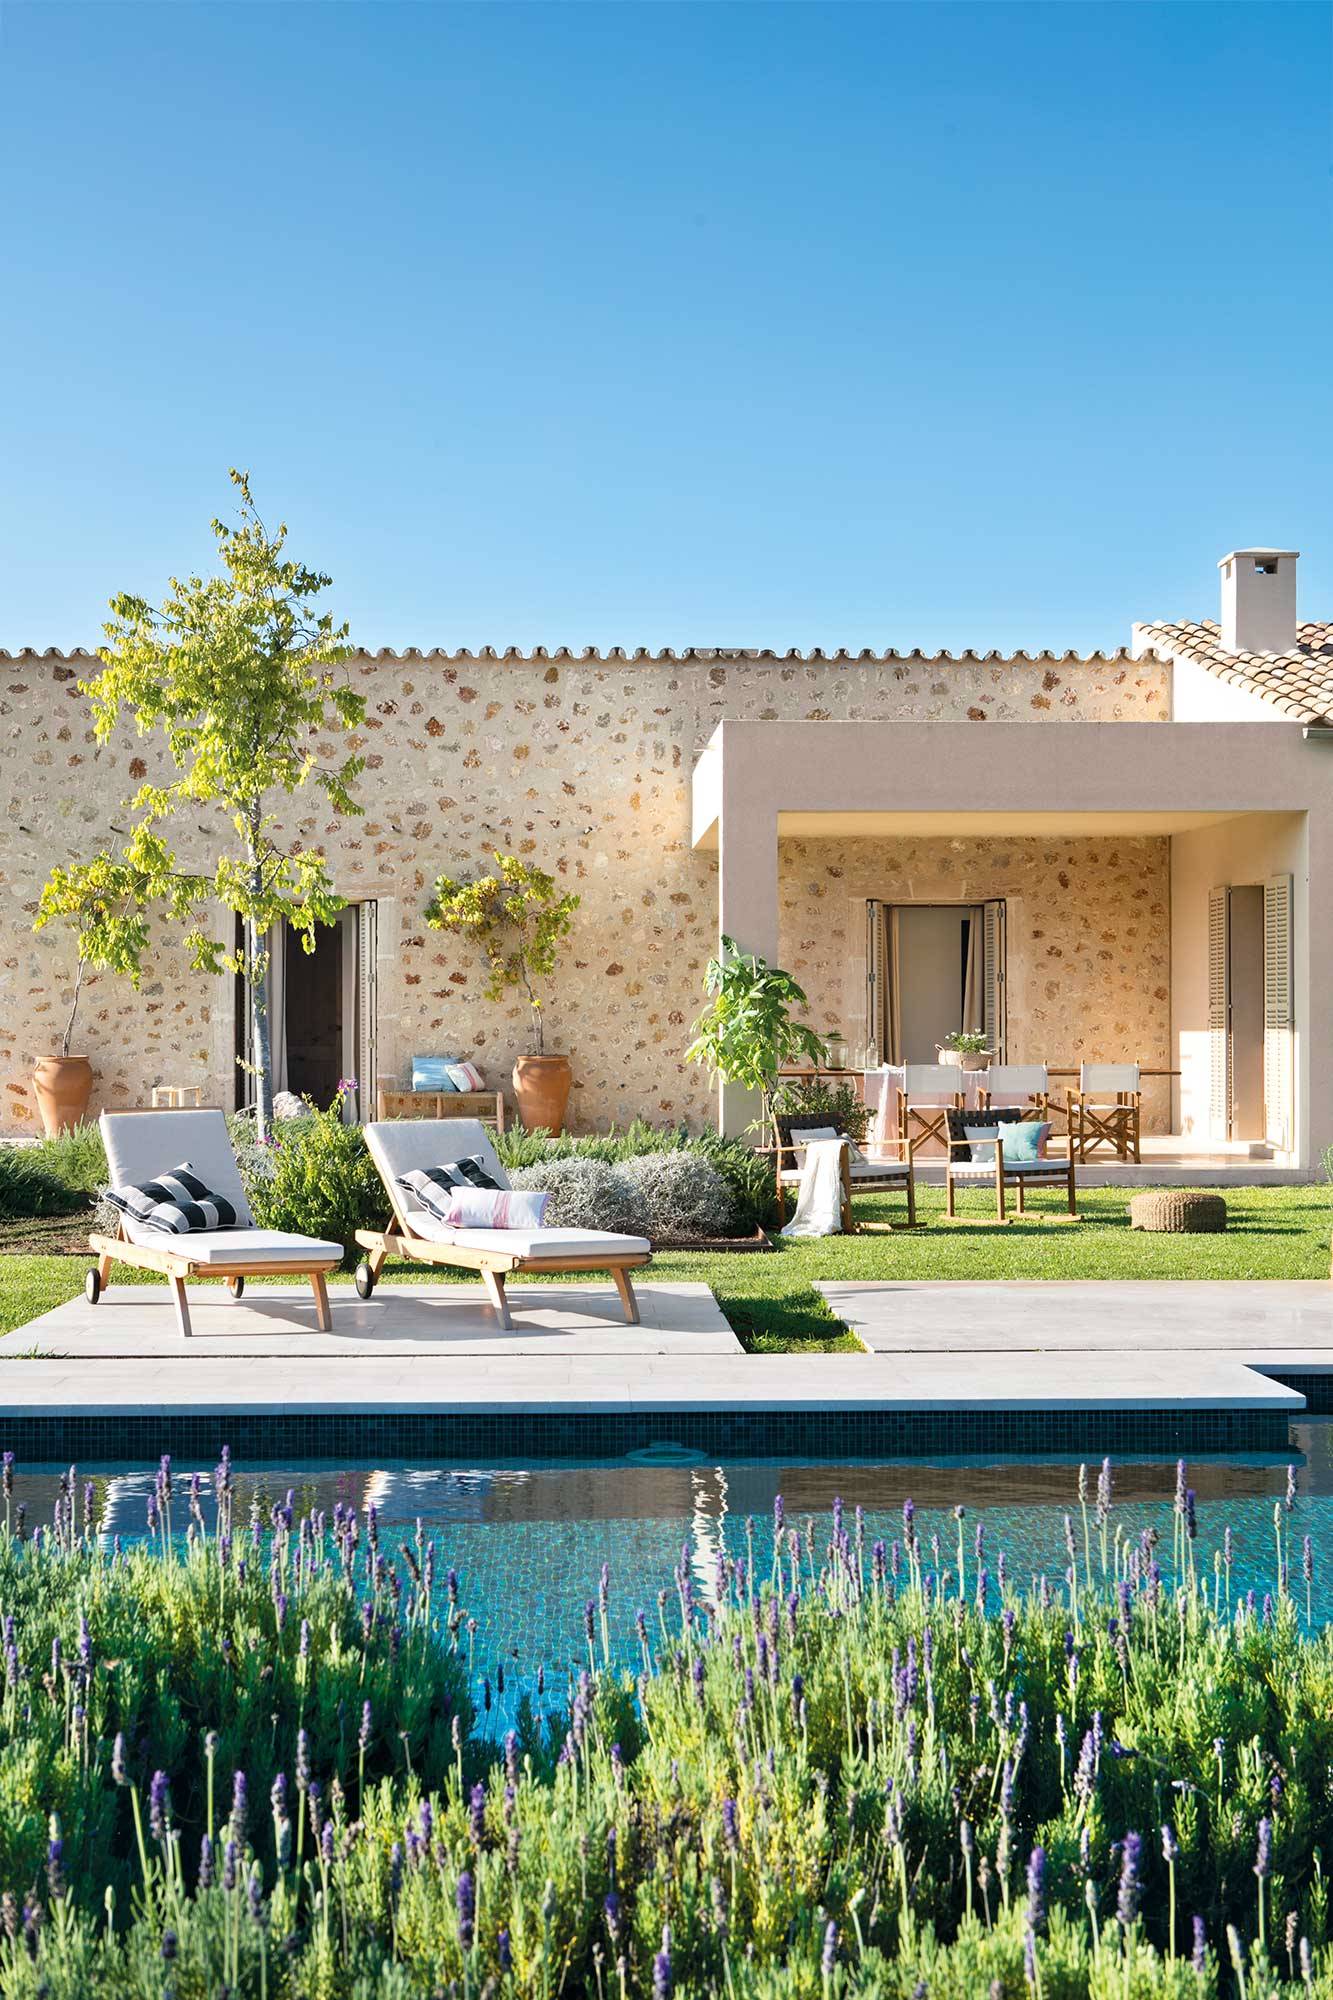 Jardín de una casa de piedra con piscina y porche de estilo moderno.